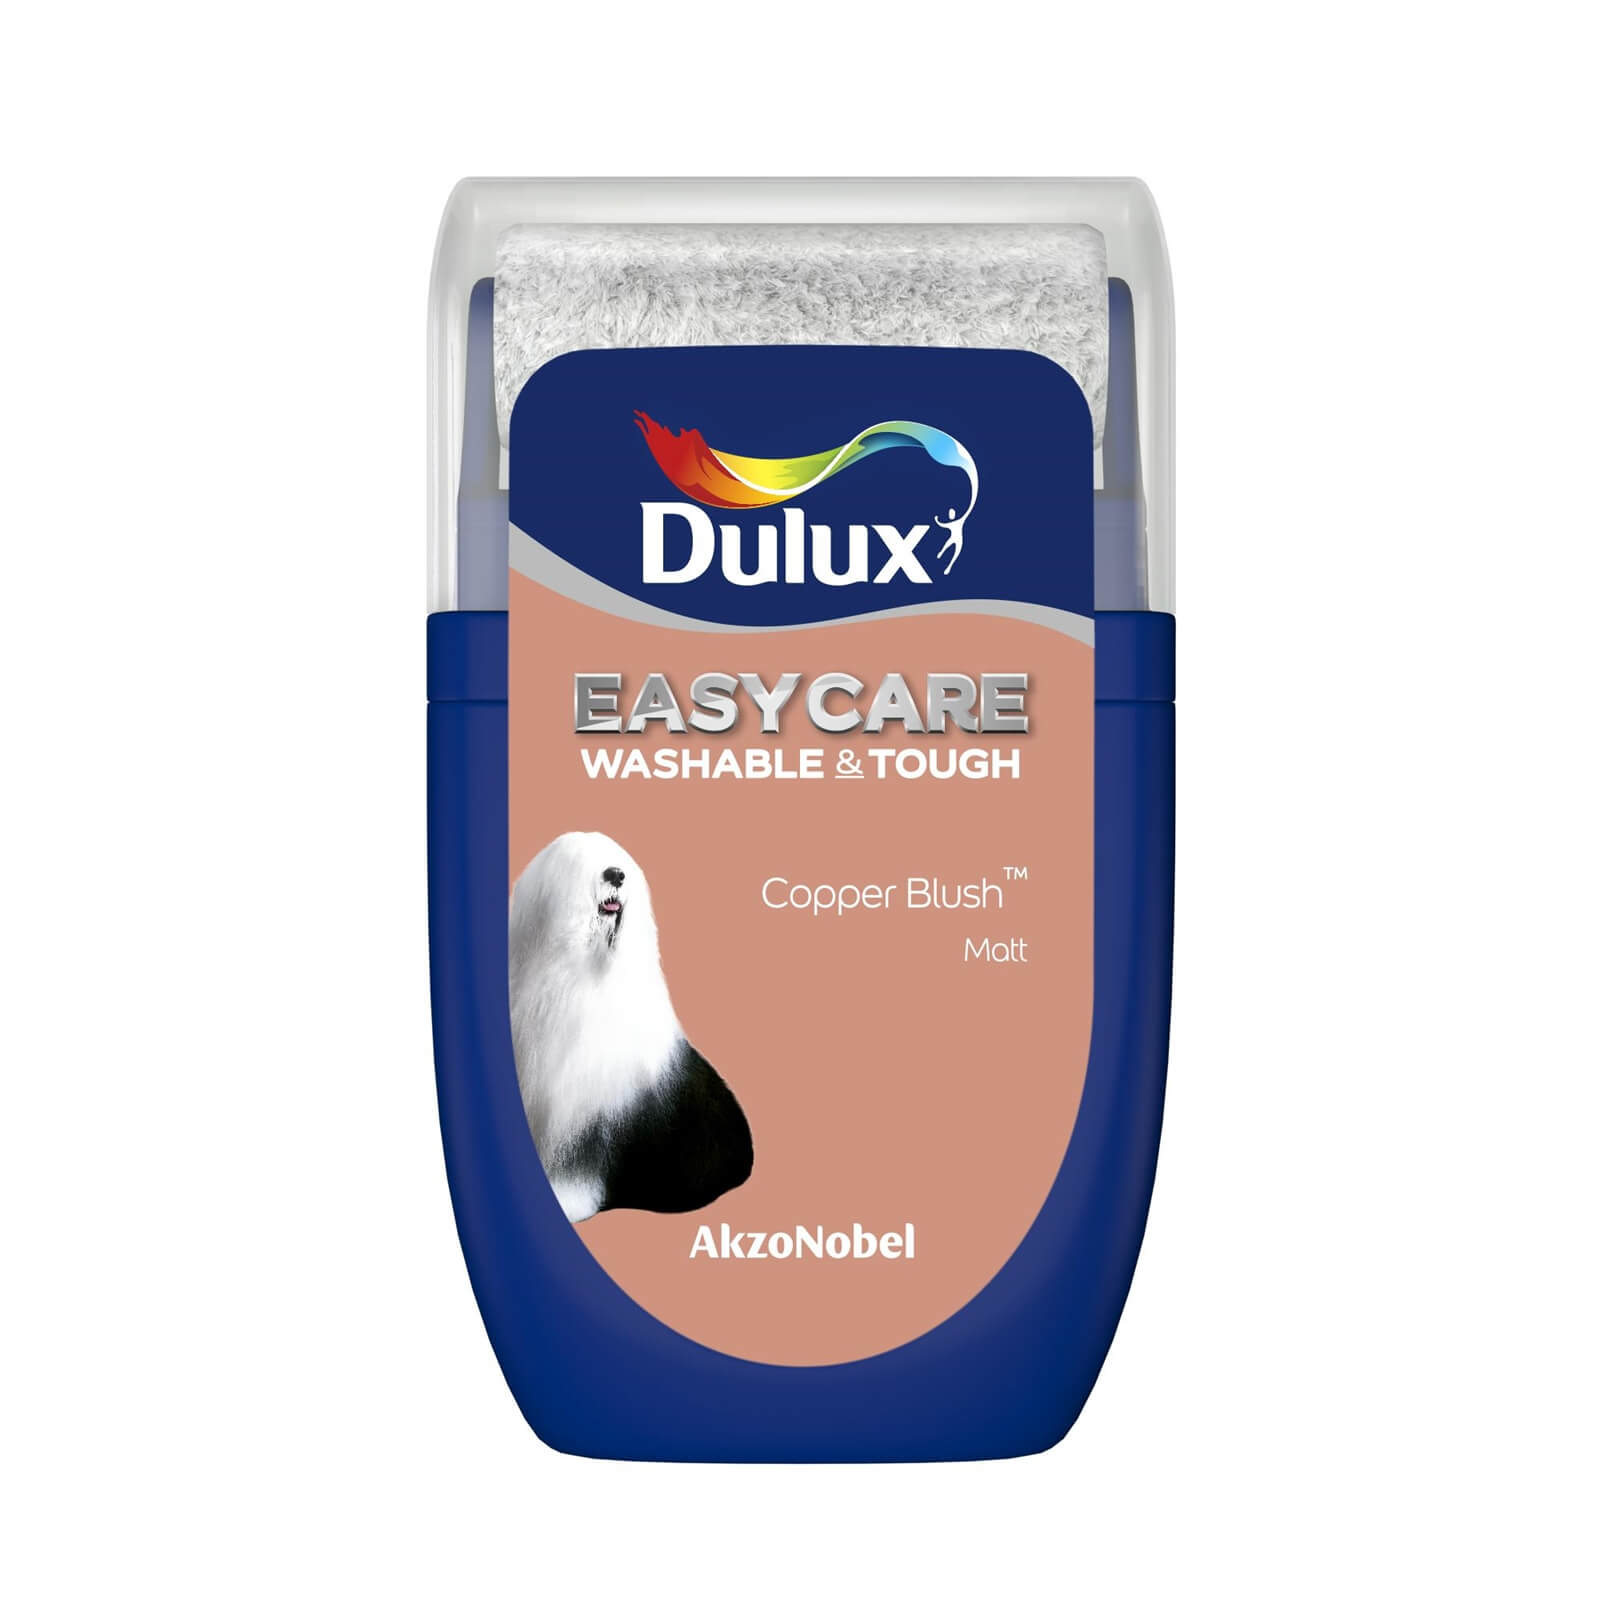 Dulux Easycare Washable & Tough Matt Paint Copper Blush - Tester 30ml